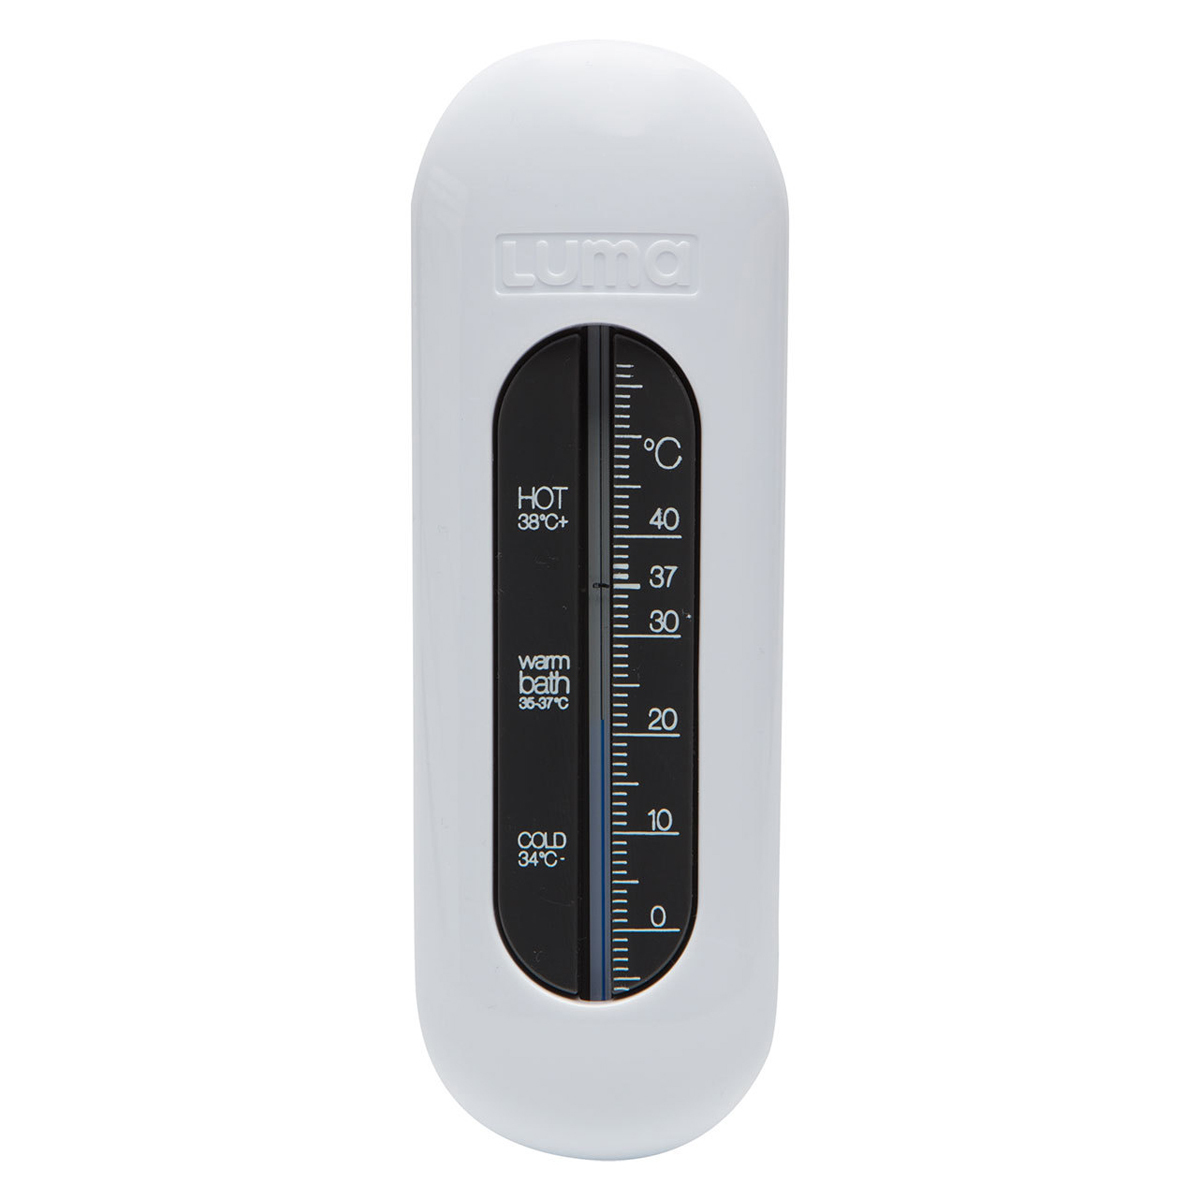 Philips Avent Thermomètre Numérique SCH480/00 - Vert - Thermomètre